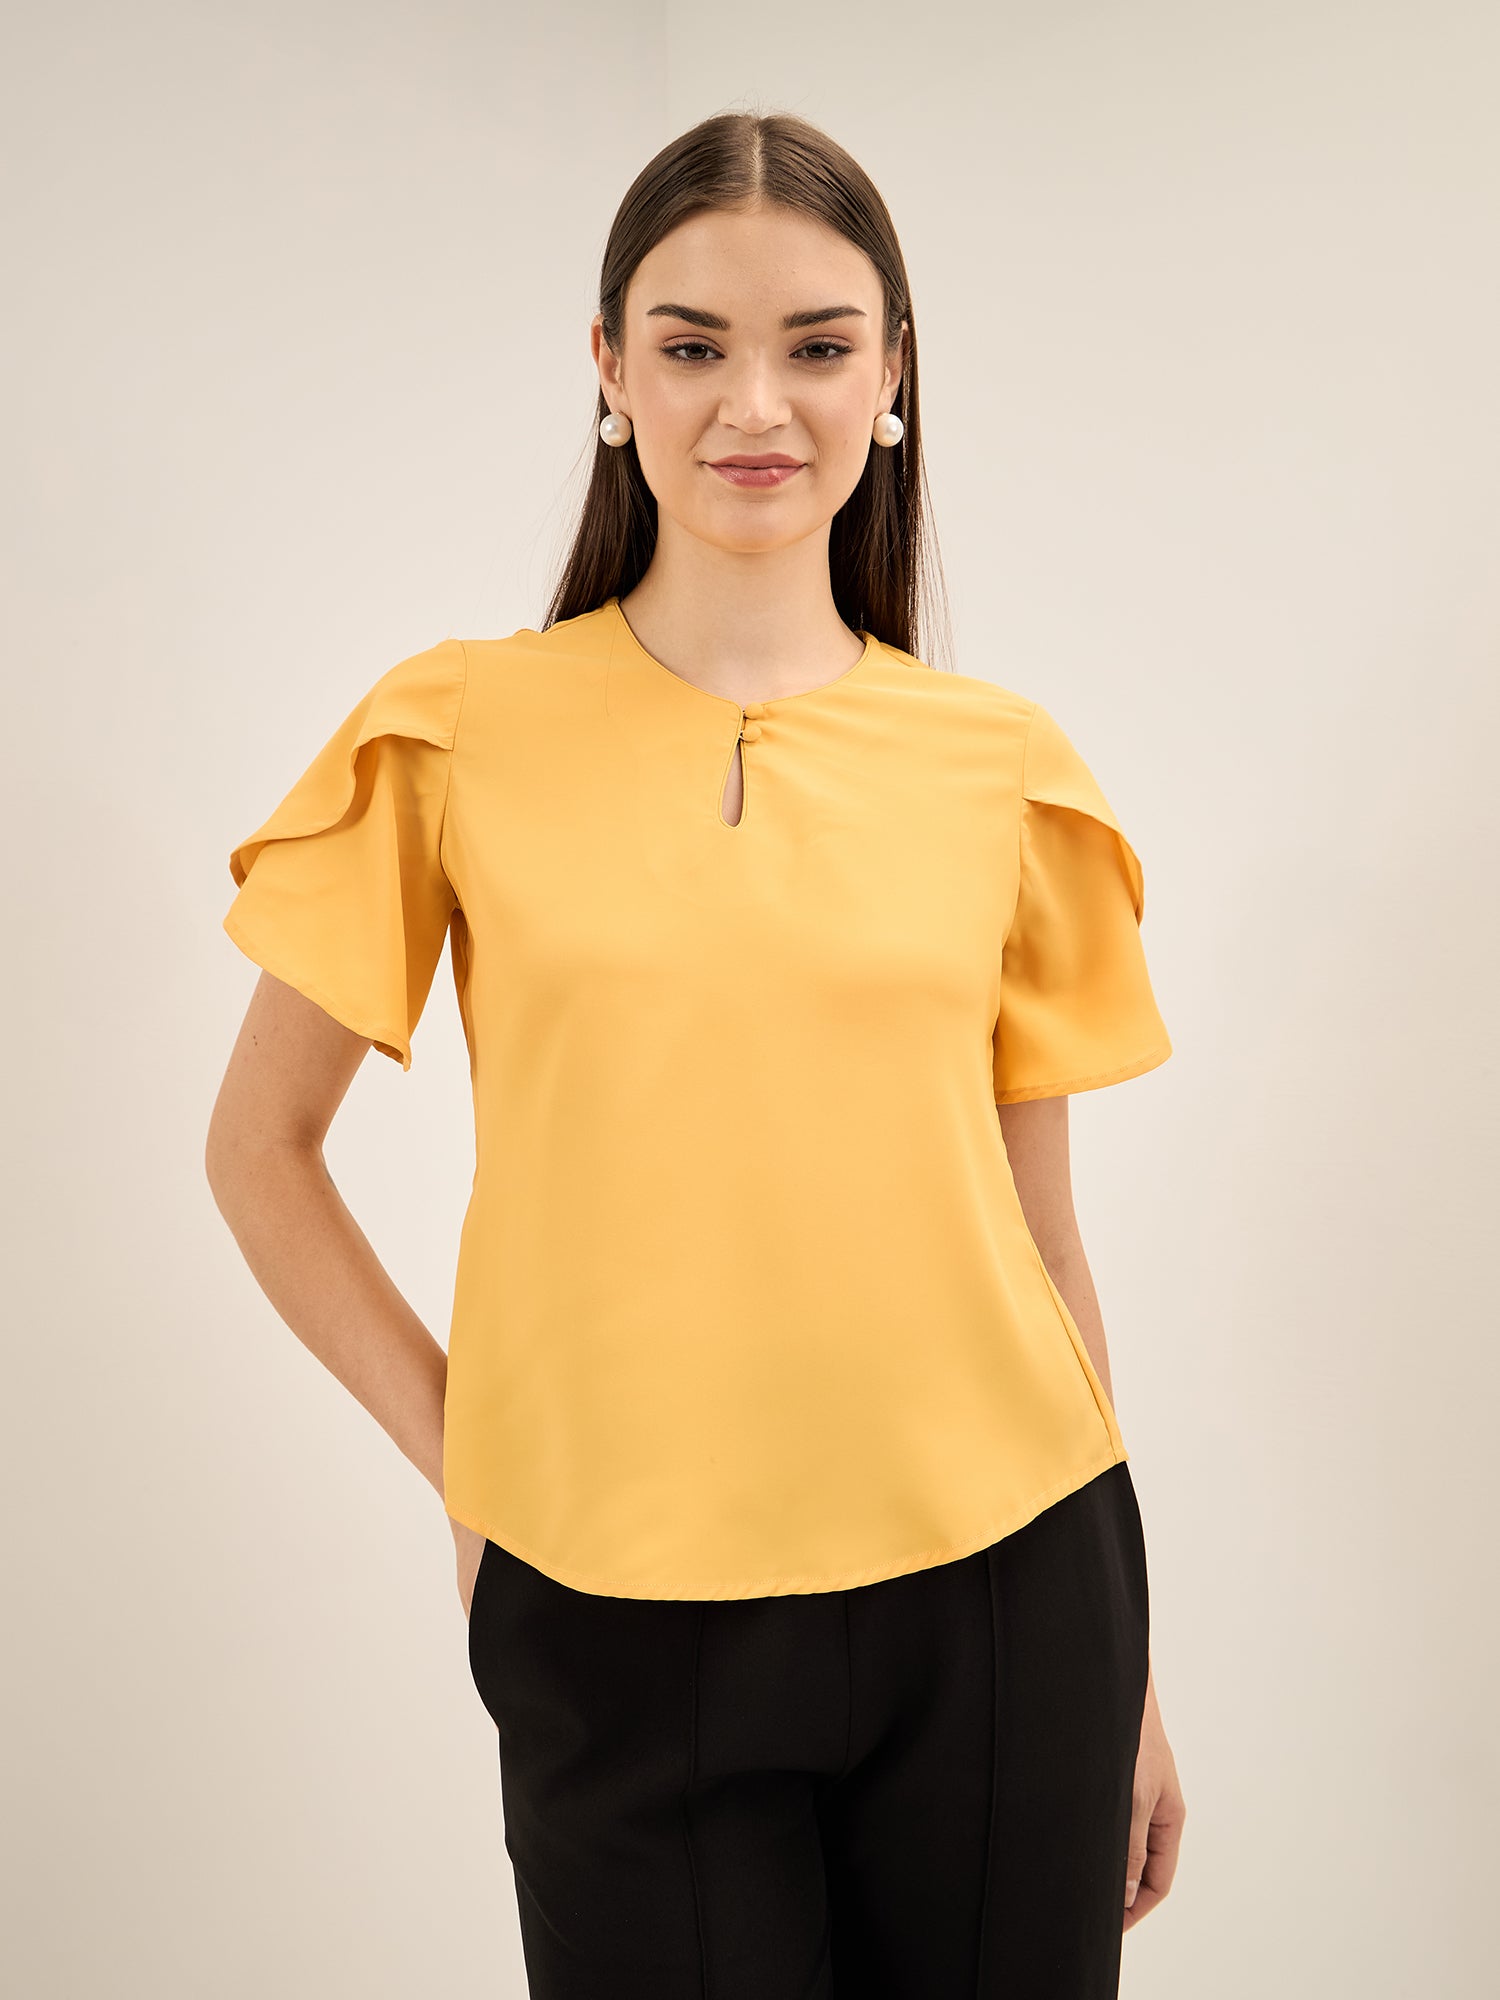 Tiffany Mimosa-Yellow Petal Sleeves Top - Yellow